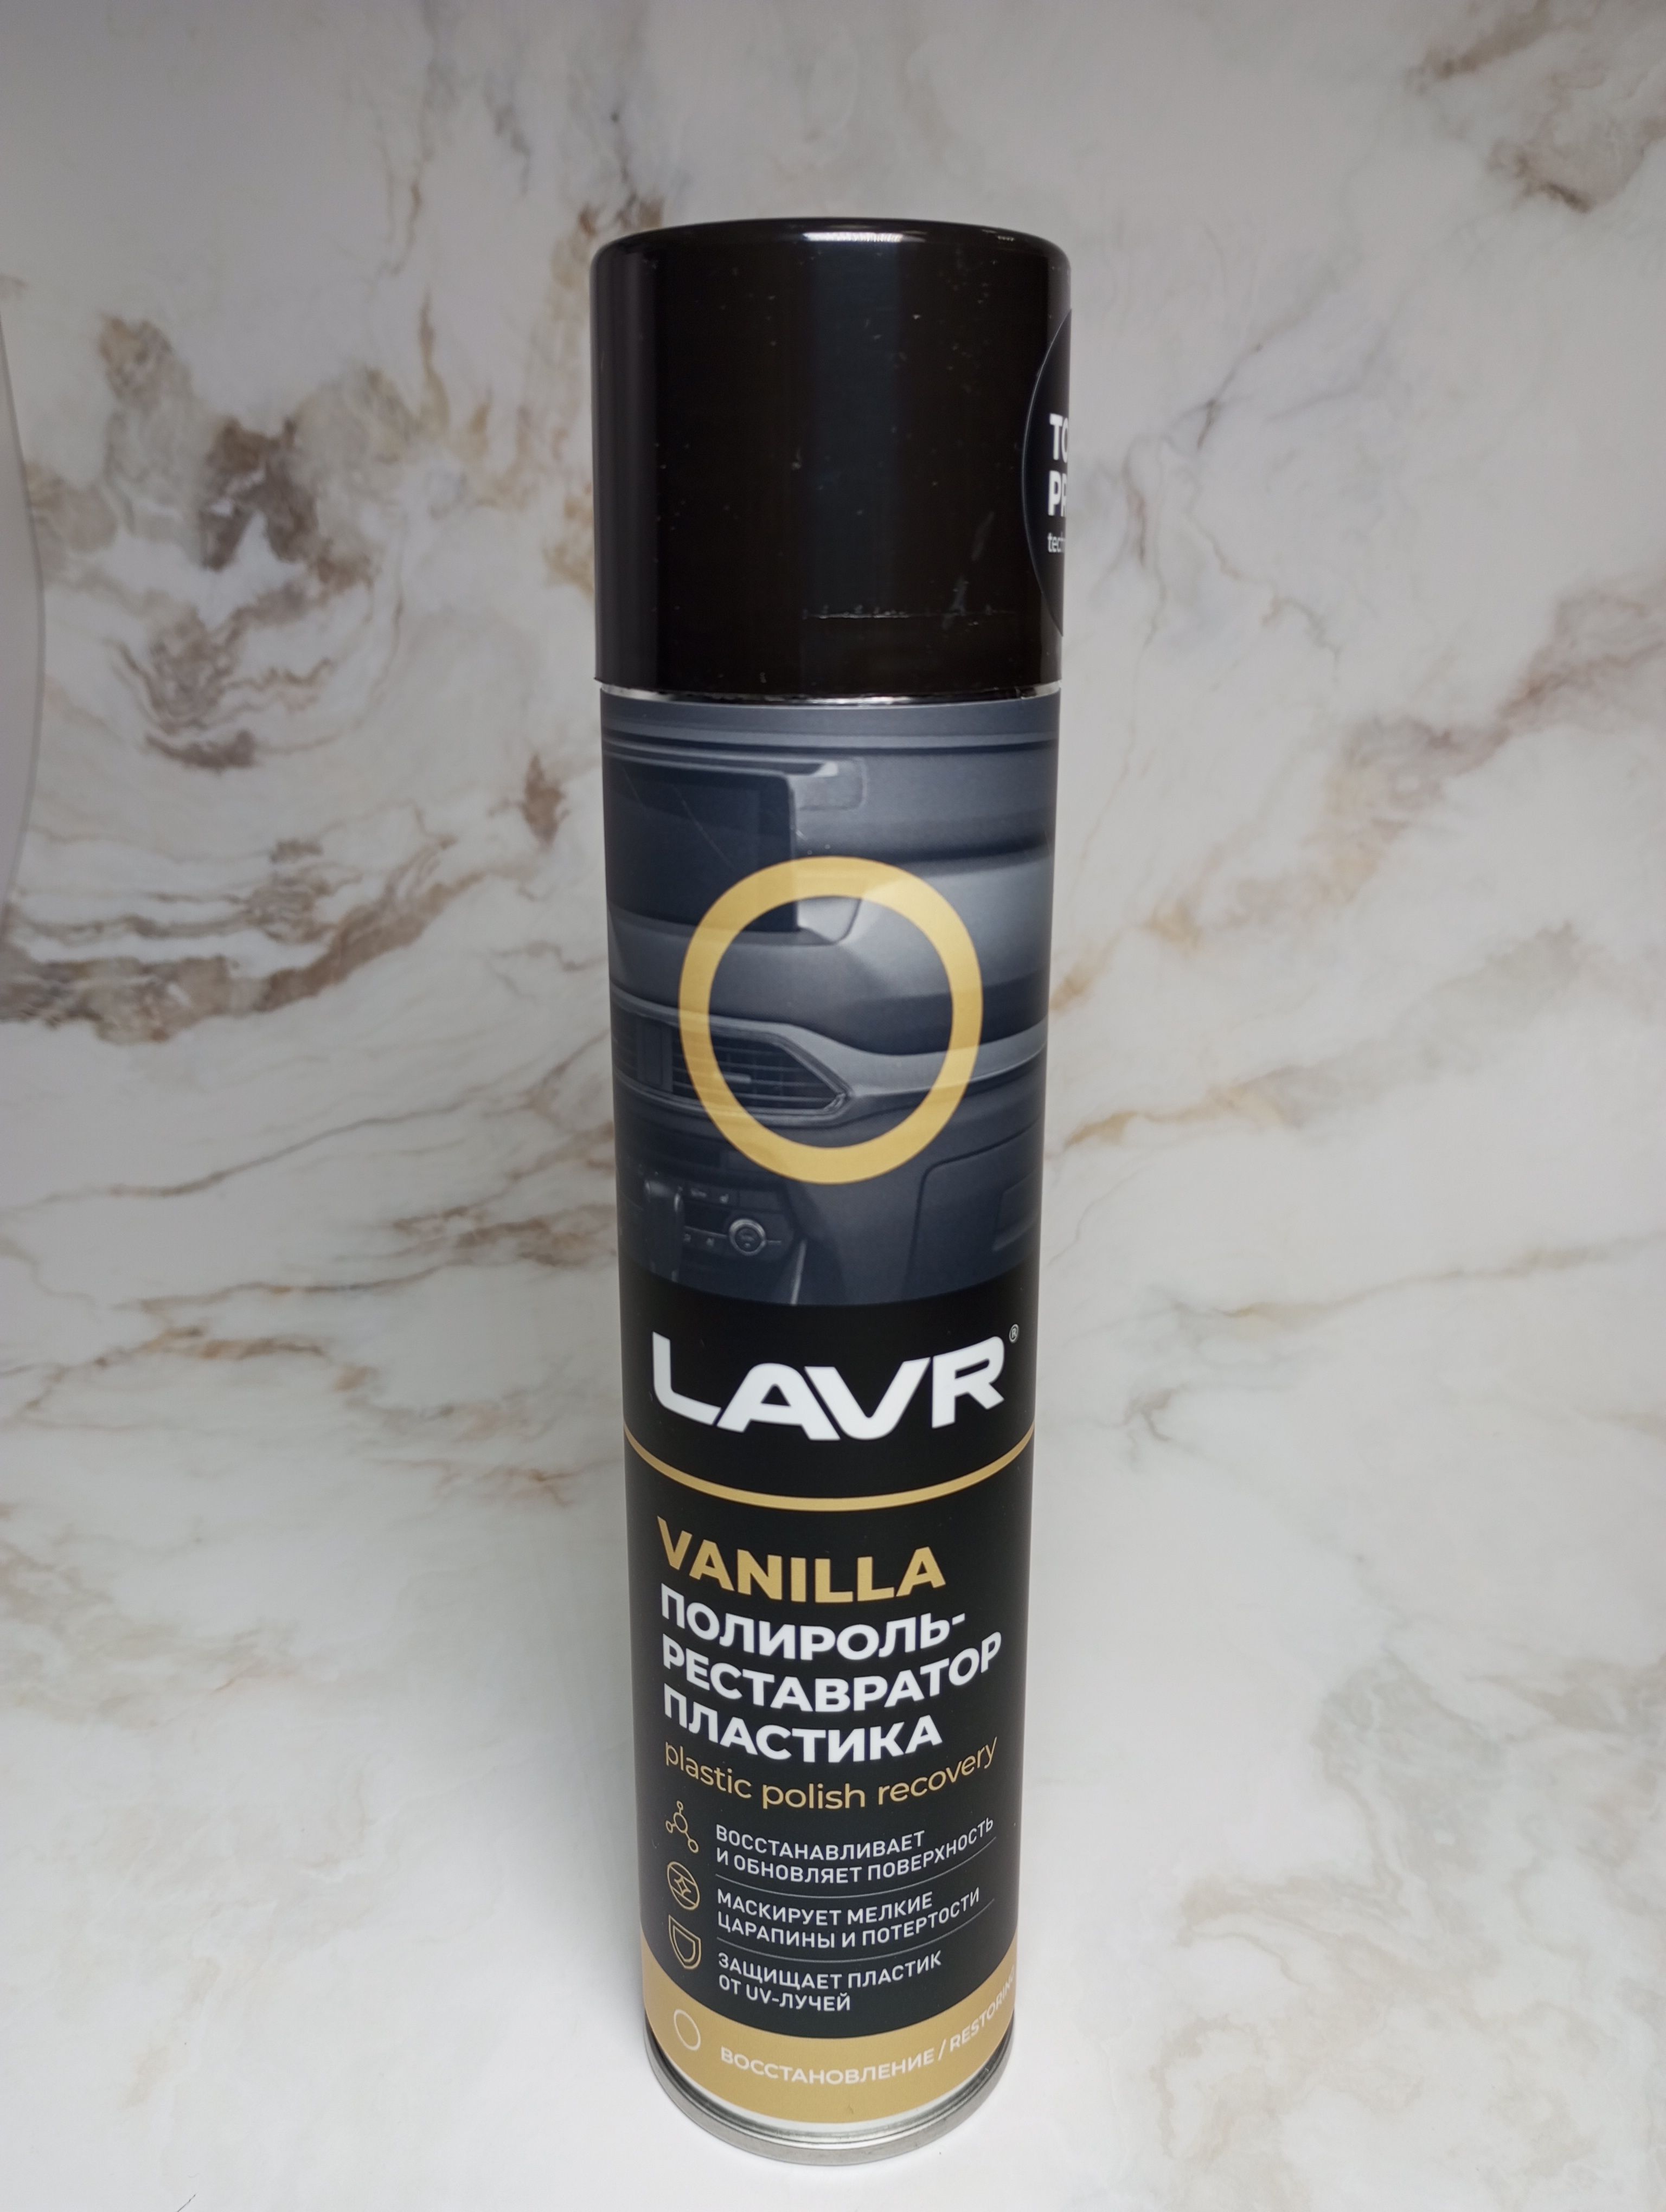 LAVR Plastic Polish Recovery Vanilla Полироль-реставратор аэрозольный для пластиковых, виниловых и резиновых поверхностей с эффектом реставрации и ароматом Ванили 400 мл